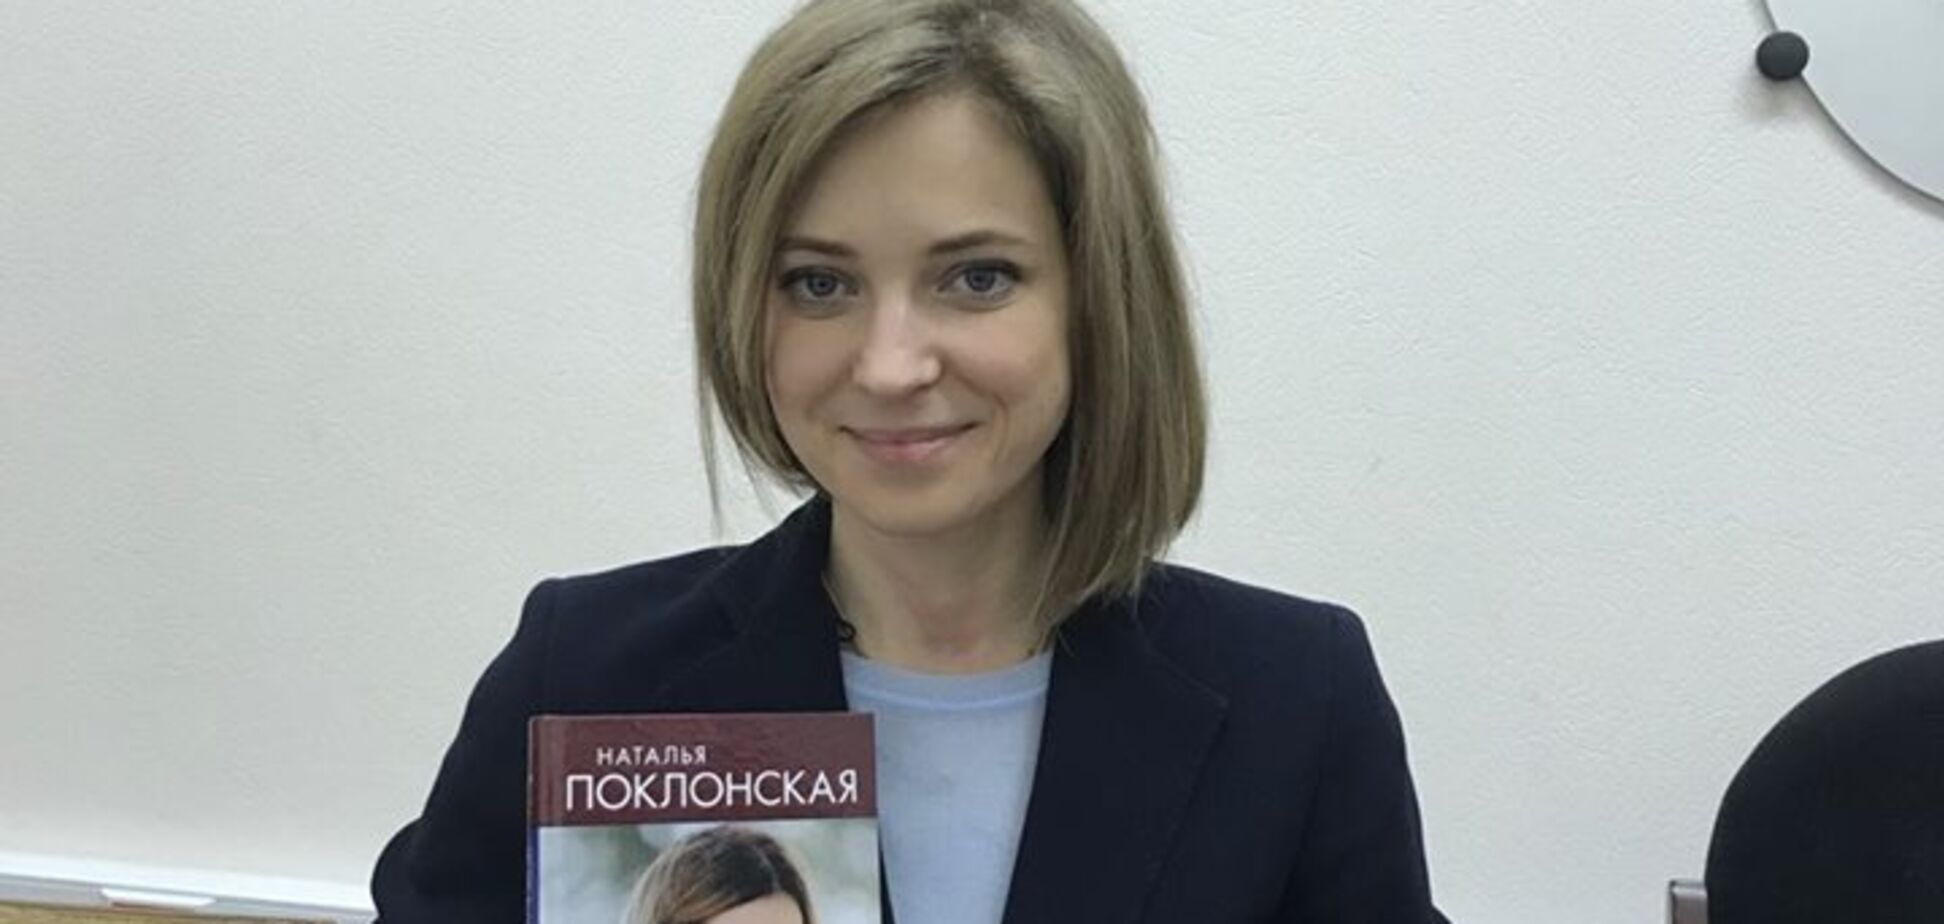 Стане в нагоді для Гааги: Няша-Поклонська написала книгу про злочини в Криму